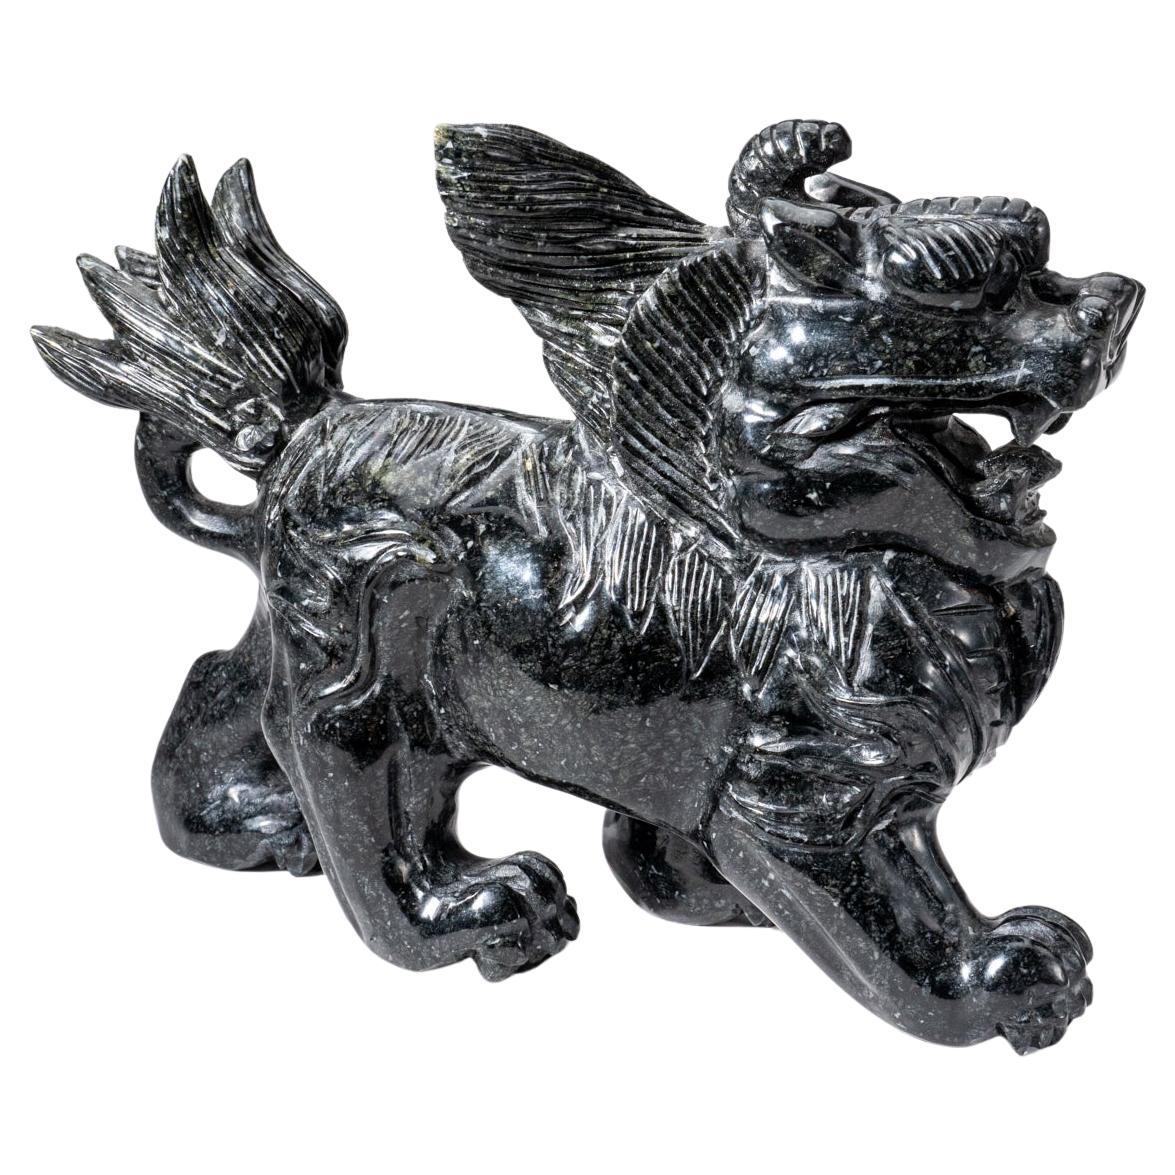 Grande sculpture à la main d'un chien de chasse chinois. Cette pièce est sculptée à la main dans un solide morceau de jade néphrite qui a été poli à la main pour obtenir une finition miroir. Ce jade est entièrement naturel, d'une couleur vert